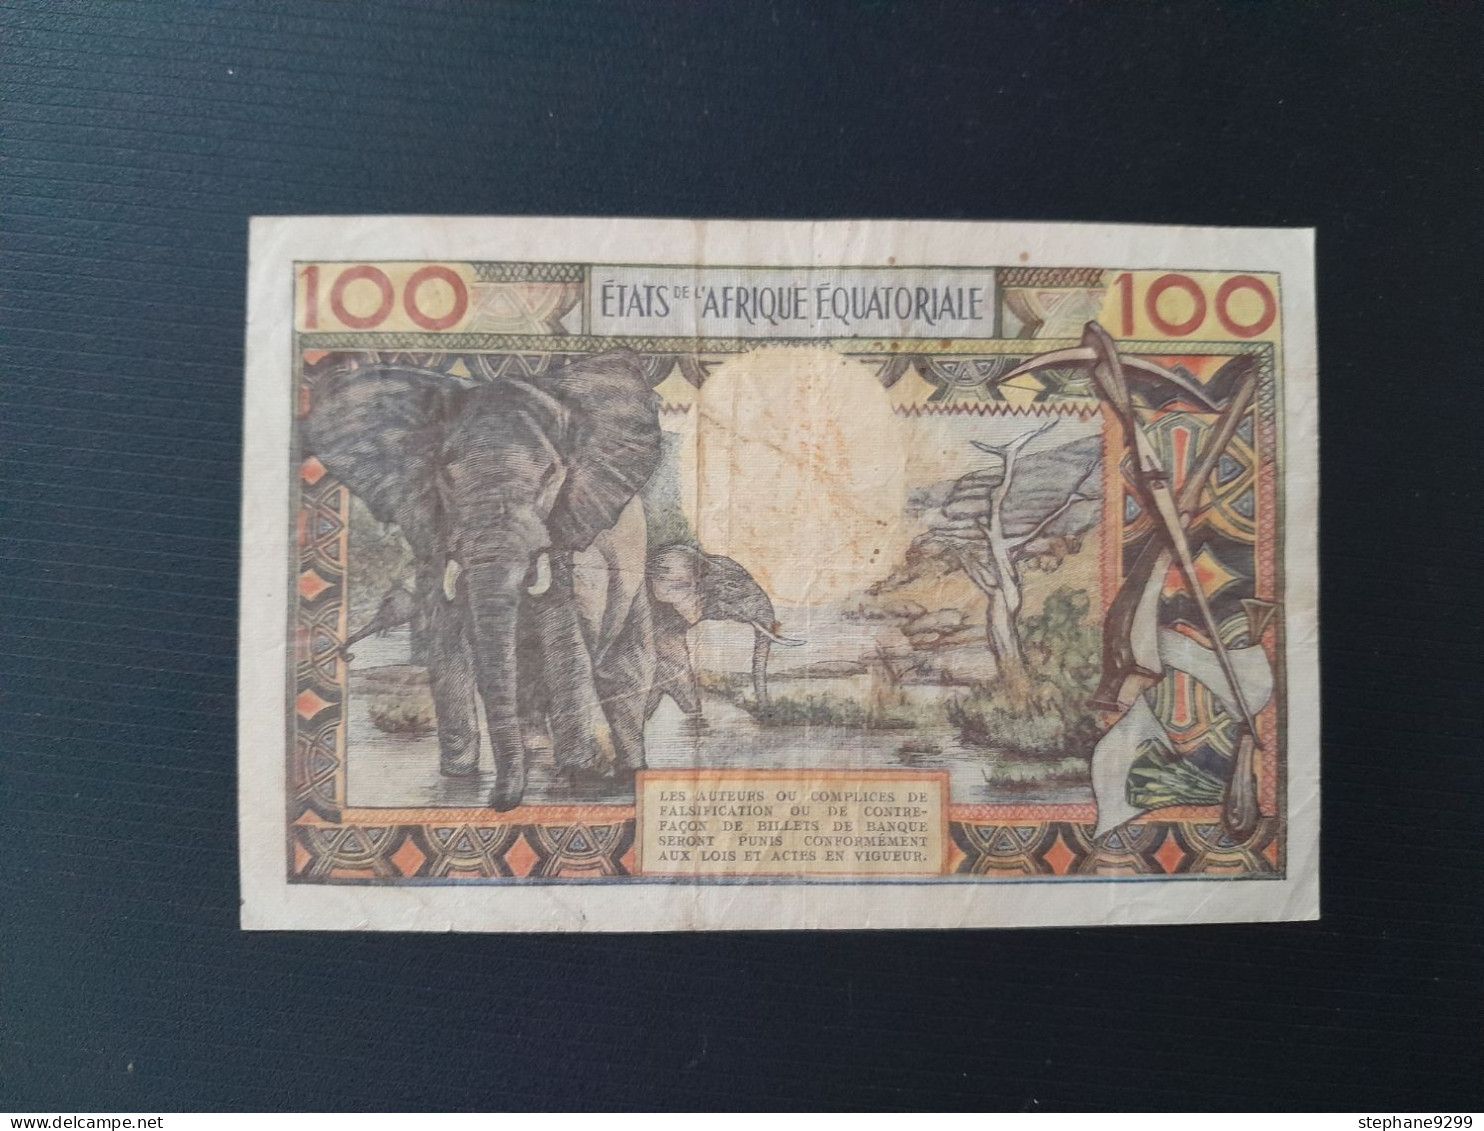 AFRIQUE EQUATORIALE 100 FRANCS 1963.LETTRE A.RARE - Other - Africa